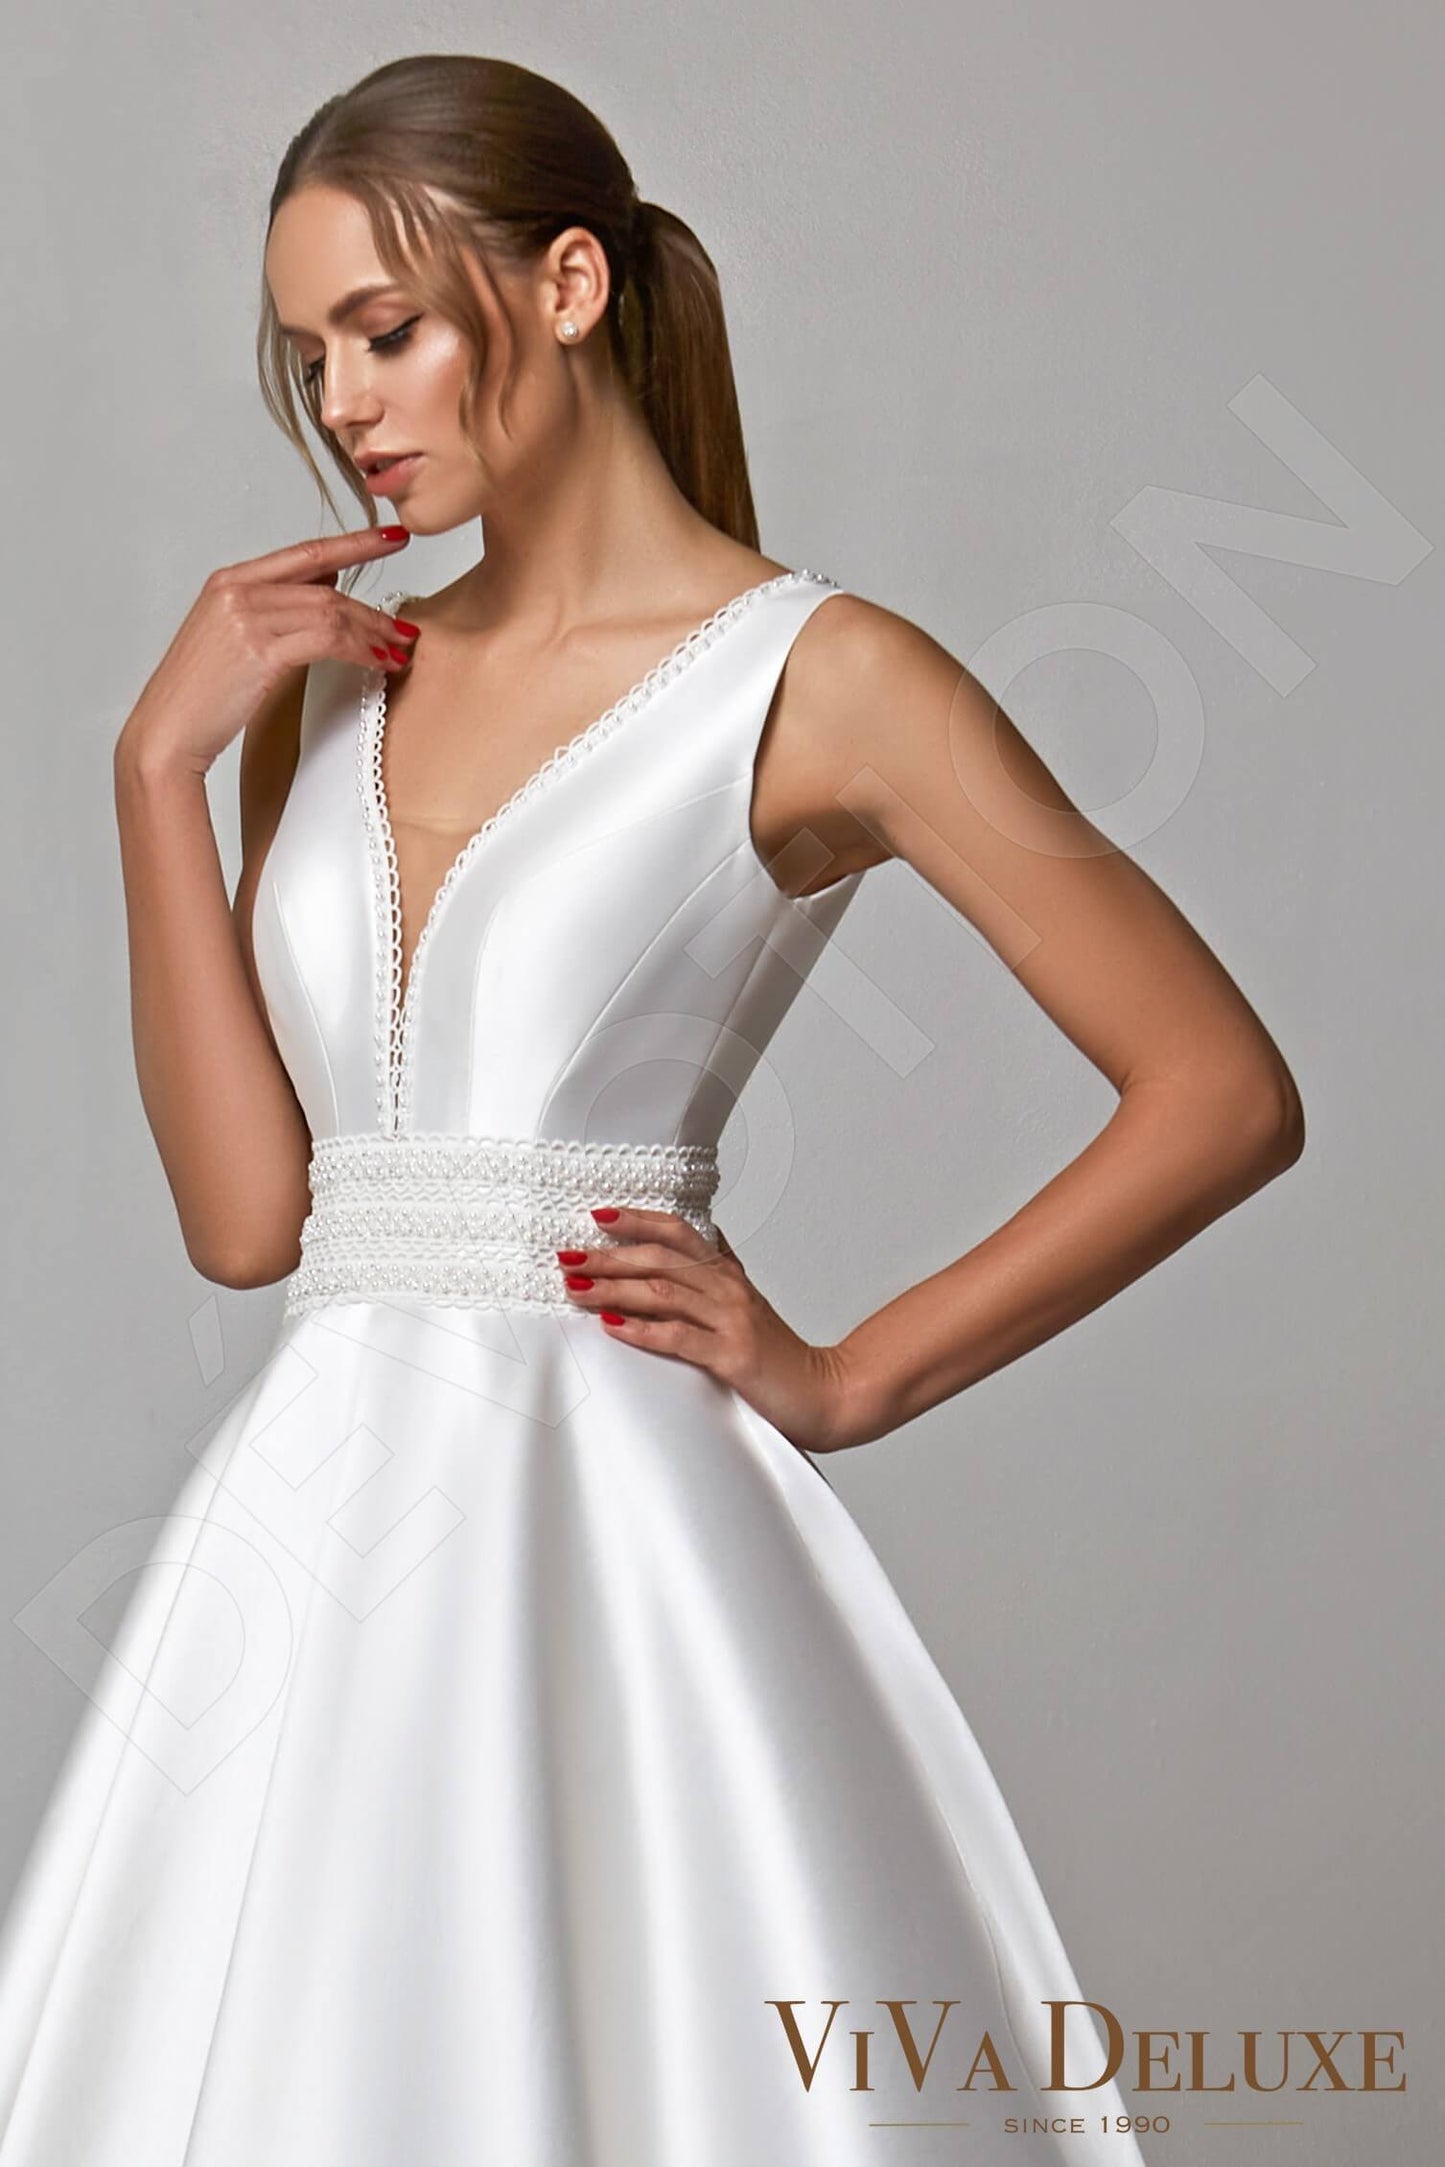 Liora Open back Princess/Ball Gown Sleeveless Wedding Dress 2